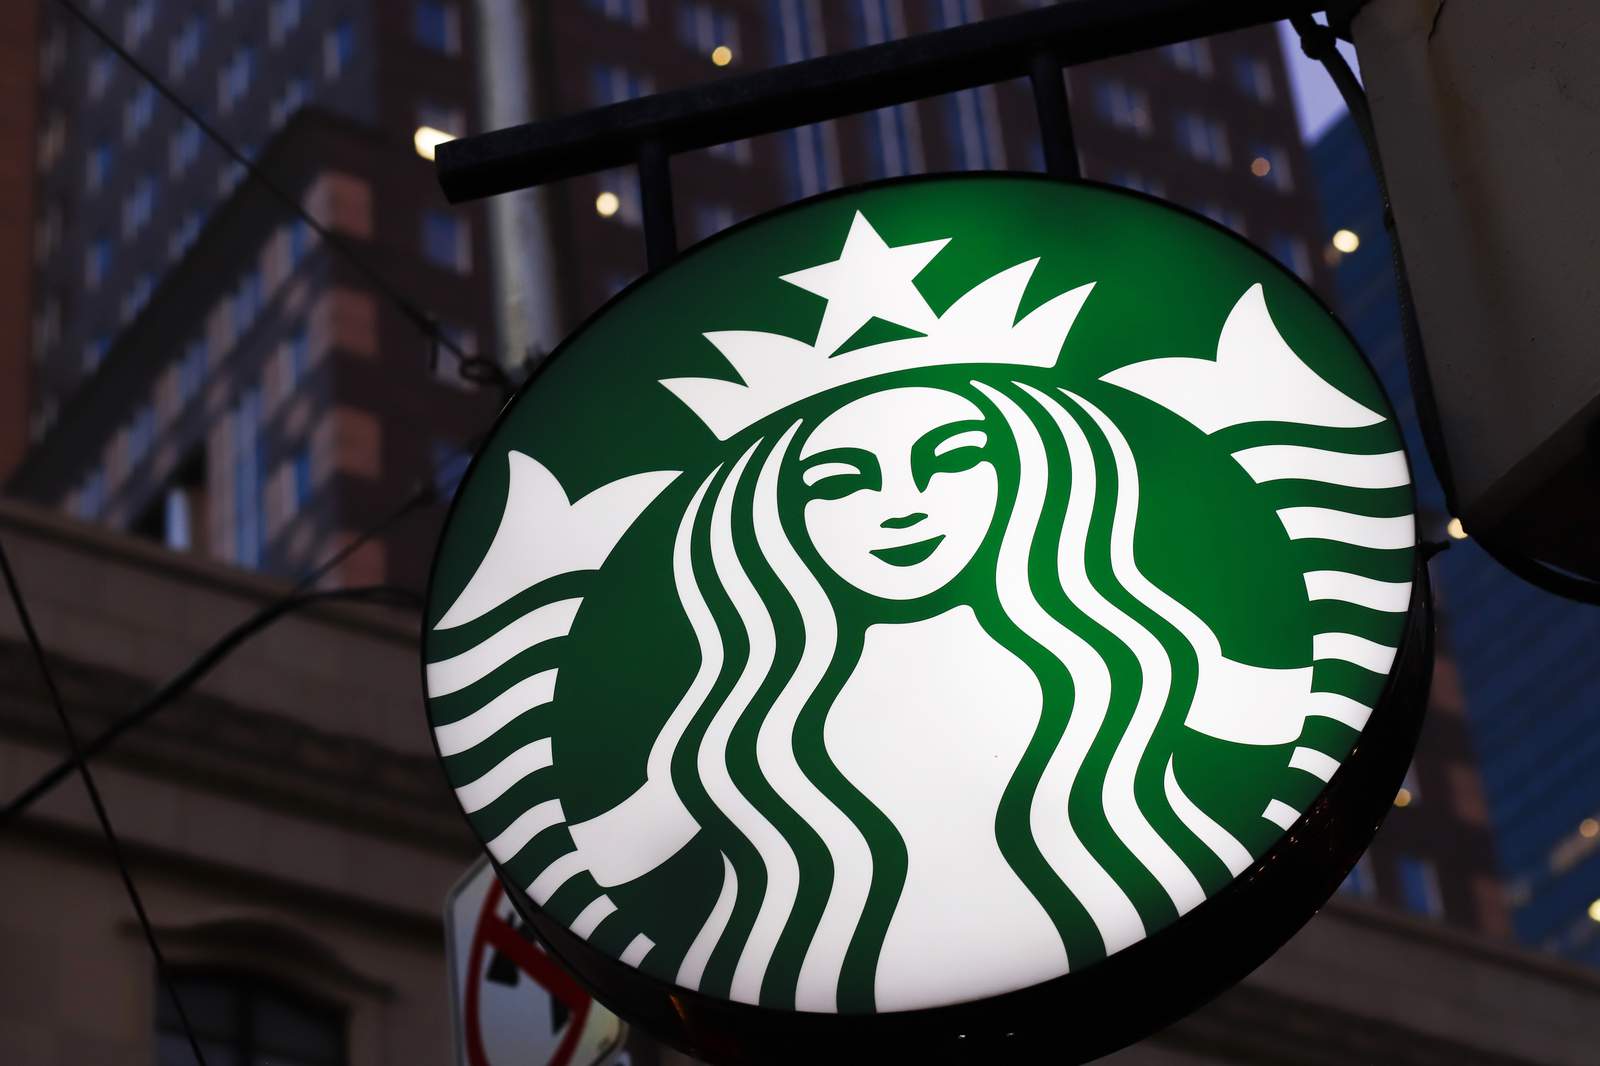 Starbucks creates own Black Lives Matter shirt for employees